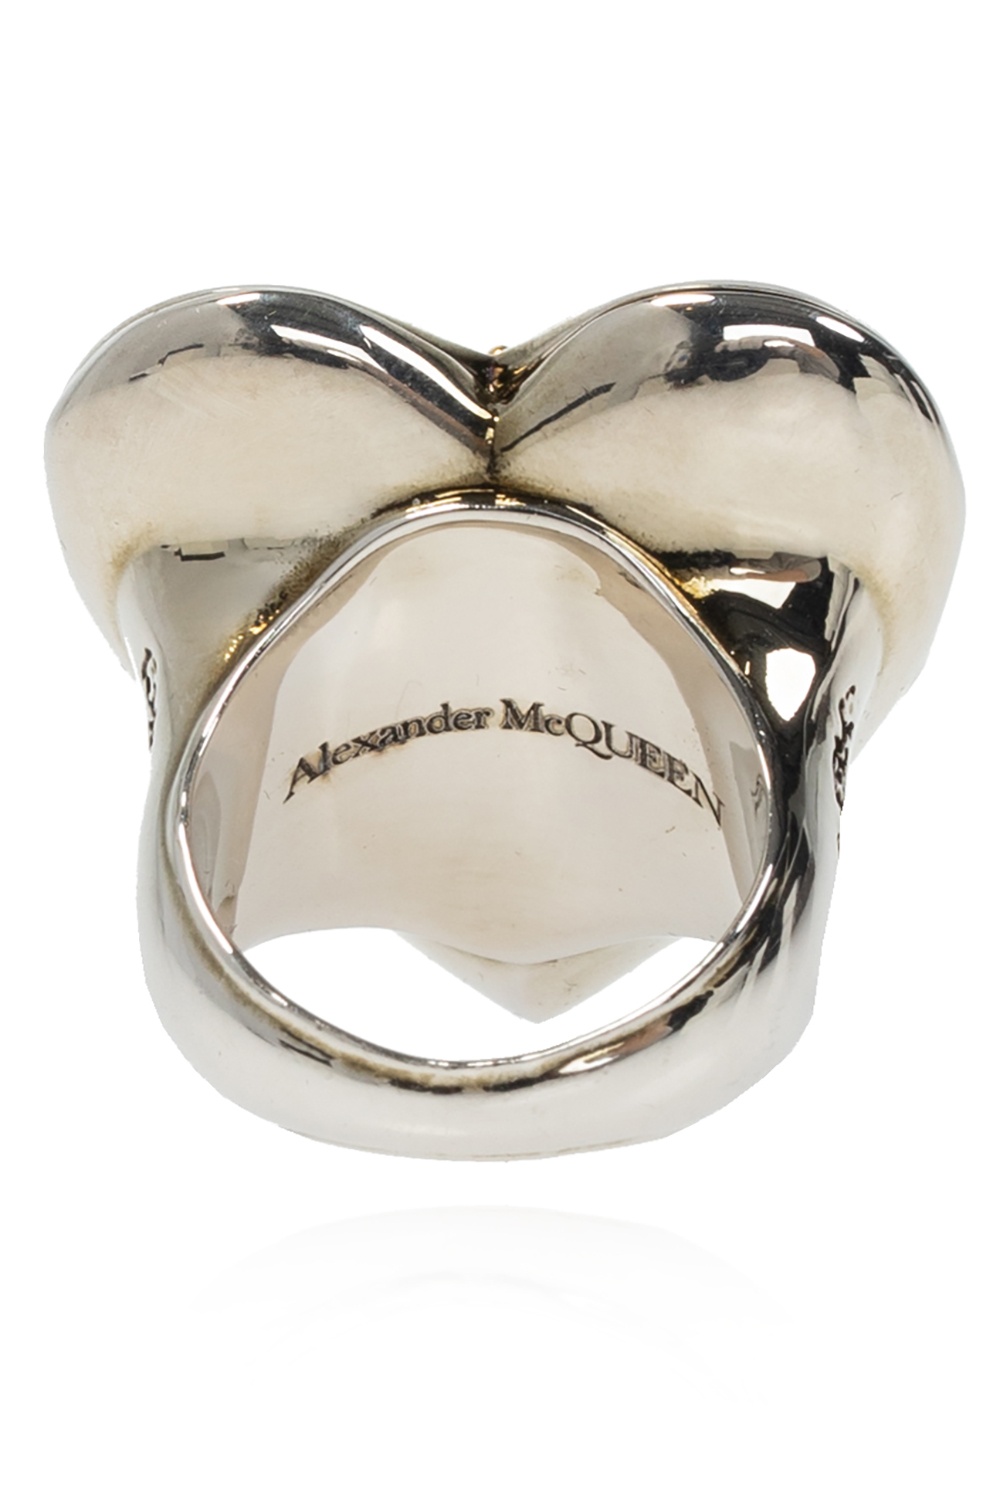 Alexander McQueen Alexander McQueen skull pendant drop earrings